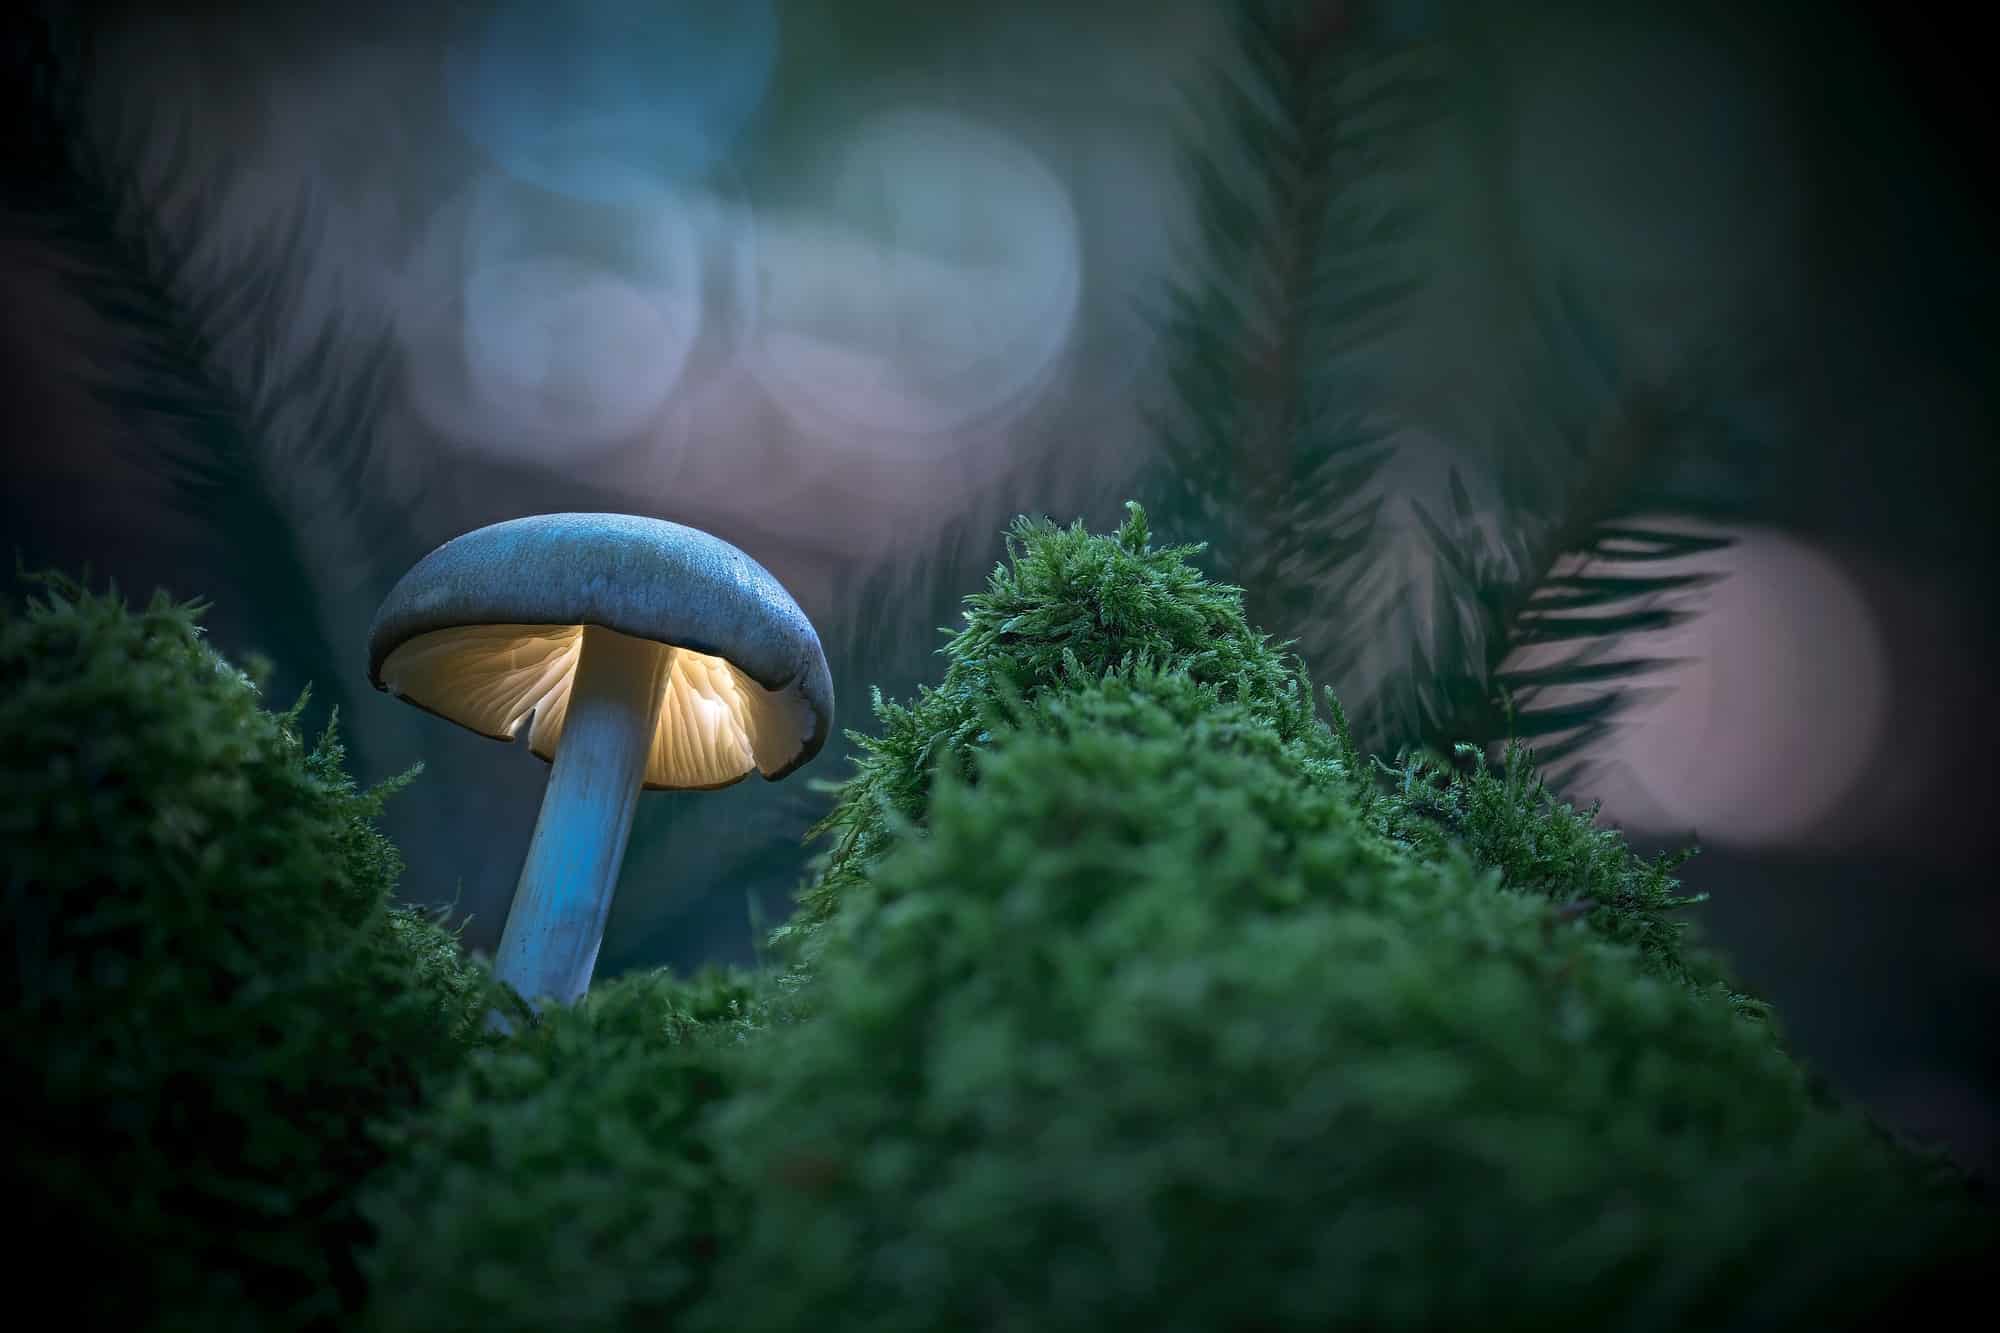 Pilz, leuchtende Fantasiewelt im abendlichen Wald